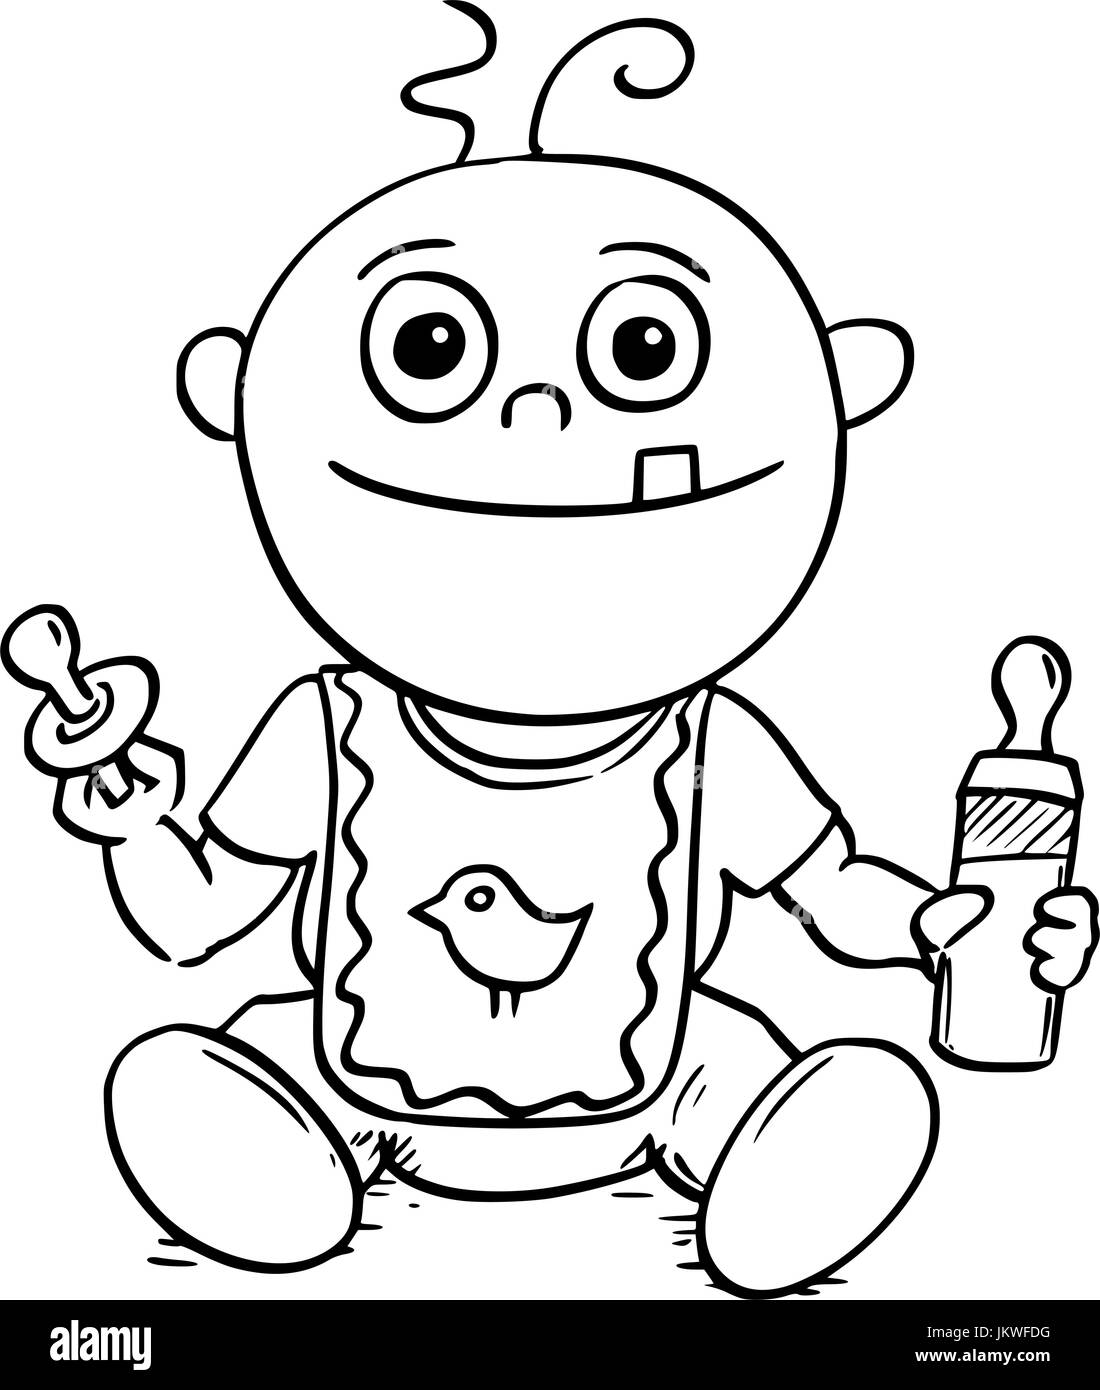 Dessin à la main cartoon vector illustration of happy smiling baby avec dummy ou une sucette ou duvet et d'alimentation ou de soins infirmiers ou sucer un biberon. Illustration de Vecteur